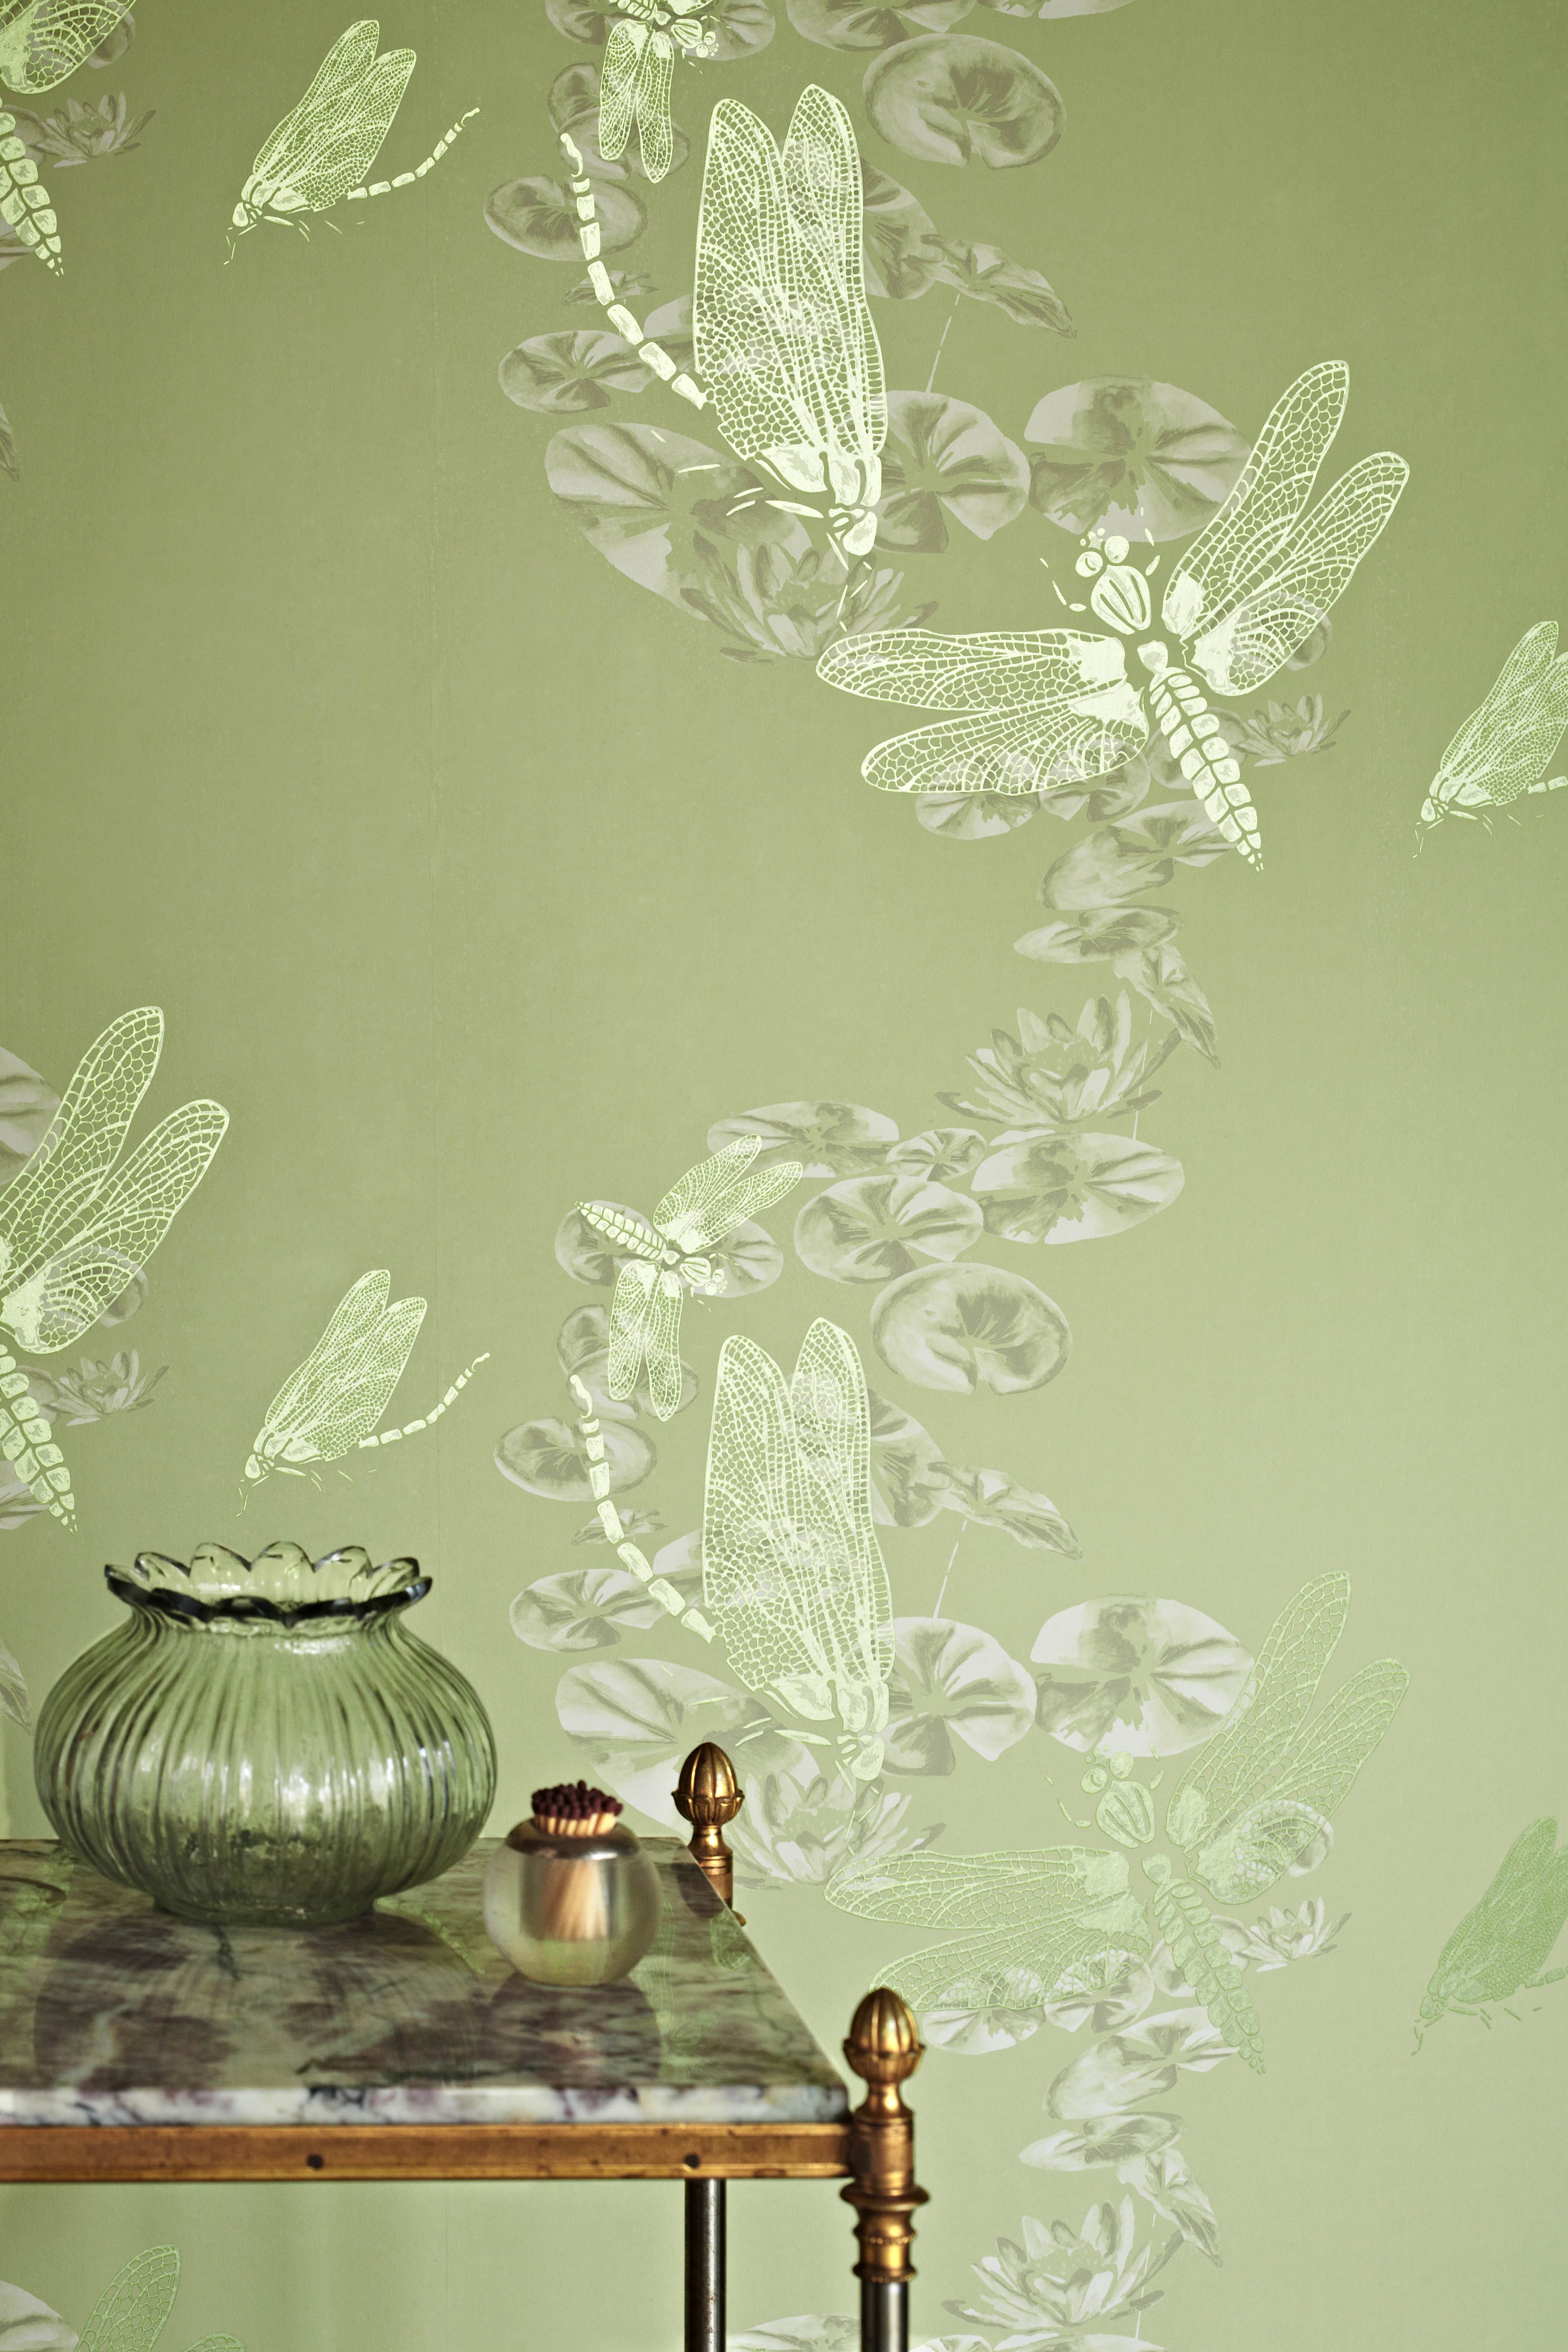 Green Wallpaper Designs Best